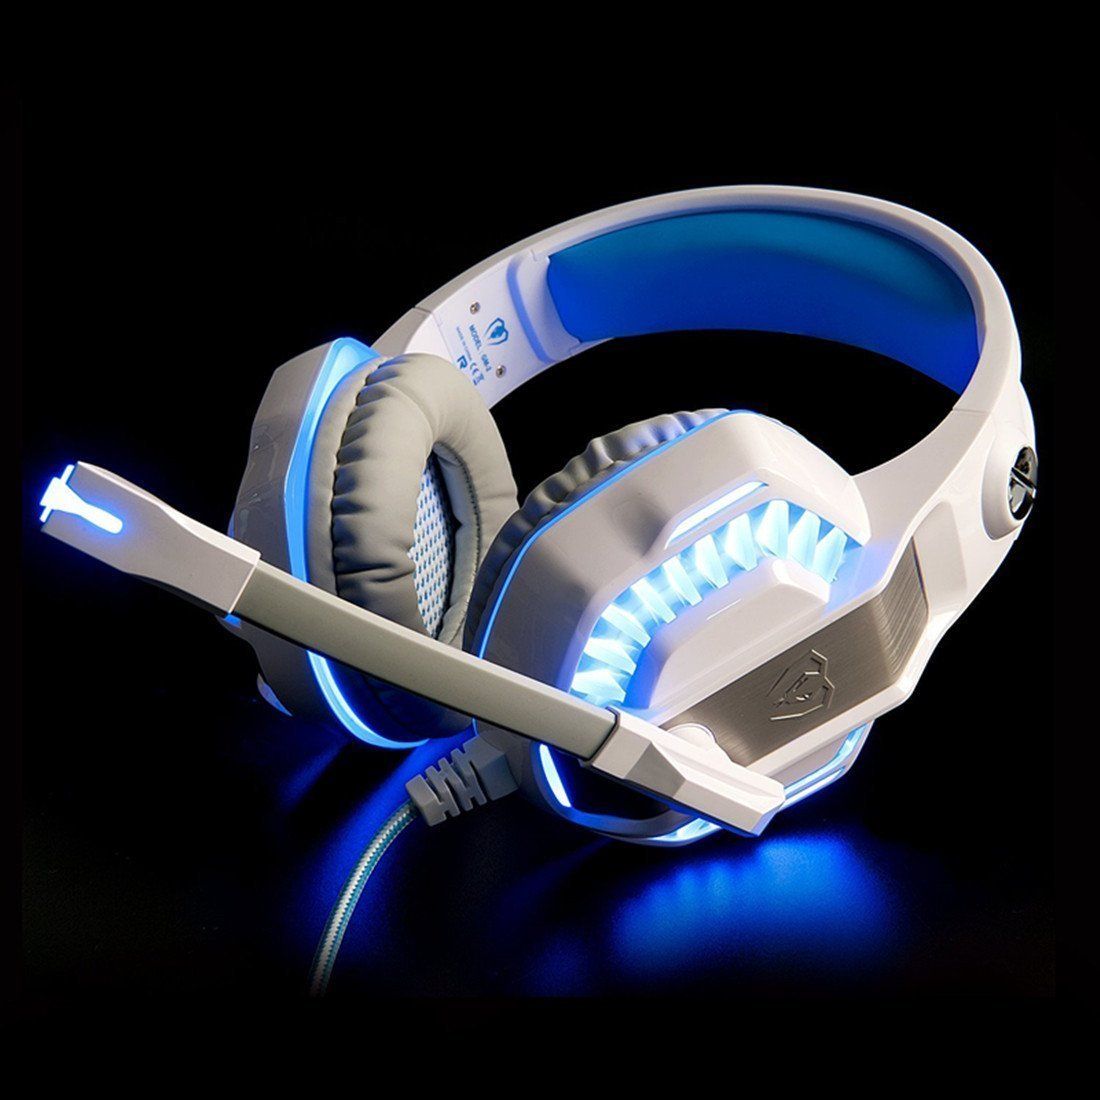 Купить наушники с подсветкой. Наушники stereo Sound Headset. Наушники с подсветкой. Синие наушники. Игровые наушники с подсветкой.